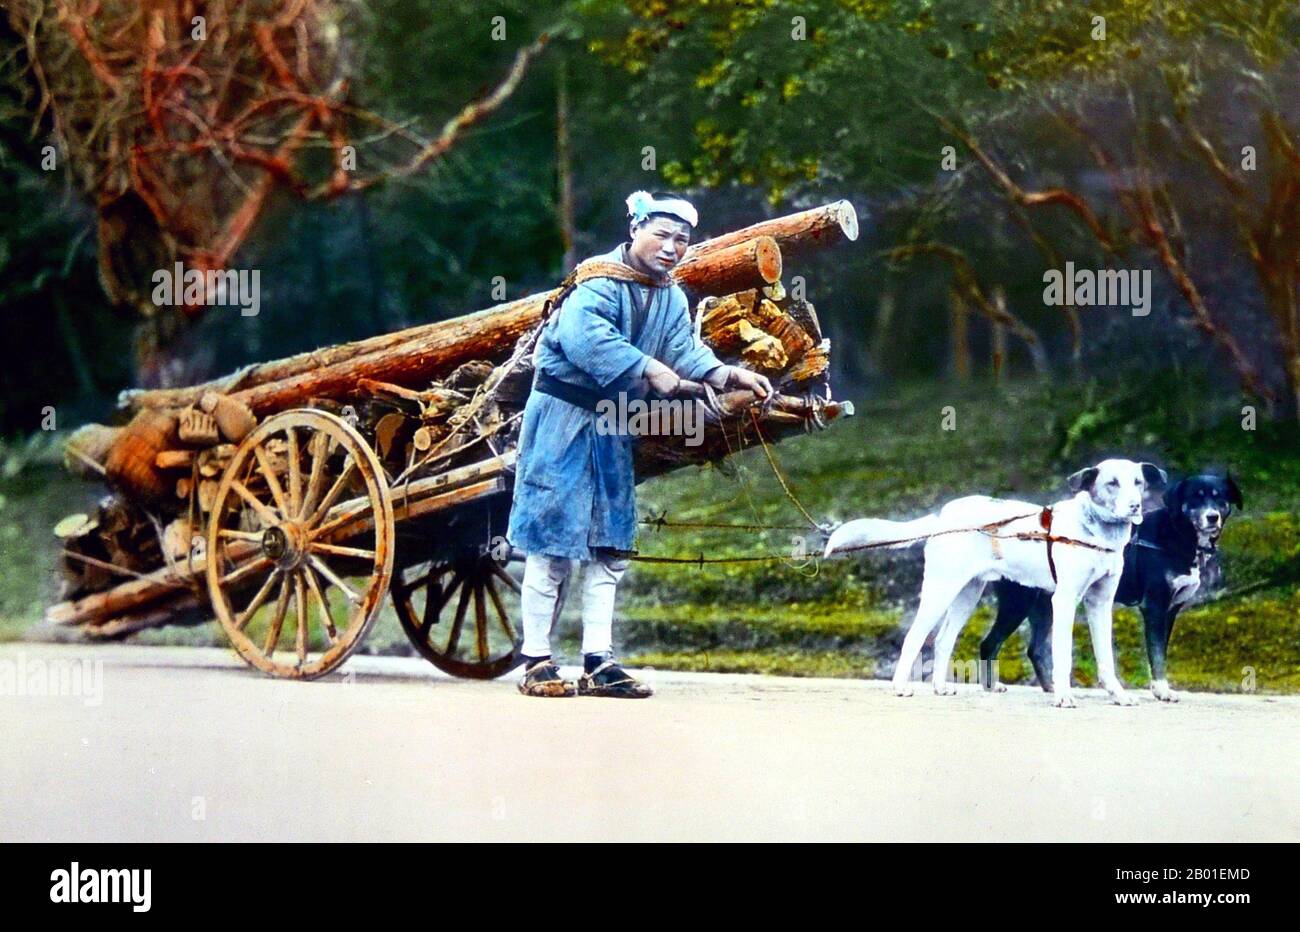 Japan: Mann mit Hundewagen zum Holzziehen, Enami Nobukuni (1859-1929), c. 1900. T. Enami (Enami Nobukuni) war der Handelsname eines gefeierten Fotografen aus der Meiji-Zeit. Man nimmt an, dass das T. seines Handelsnamens für Toshi steht, obwohl er es nie in einem persönlichen oder geschäftlichen Dokument ausgeschrieben hat. Geboren in Edo (jetzt Tokio) während der Bakumatsu-Ära, war Enami zunächst Student und dann Assistent des bekannten Fotografen und Kollotypisten Ogawa Kazumasa. Enami zog nach Yokohama um und eröffnete 1892 ein Studio in der Benten-dōri (Benten-Straße). Stockfoto